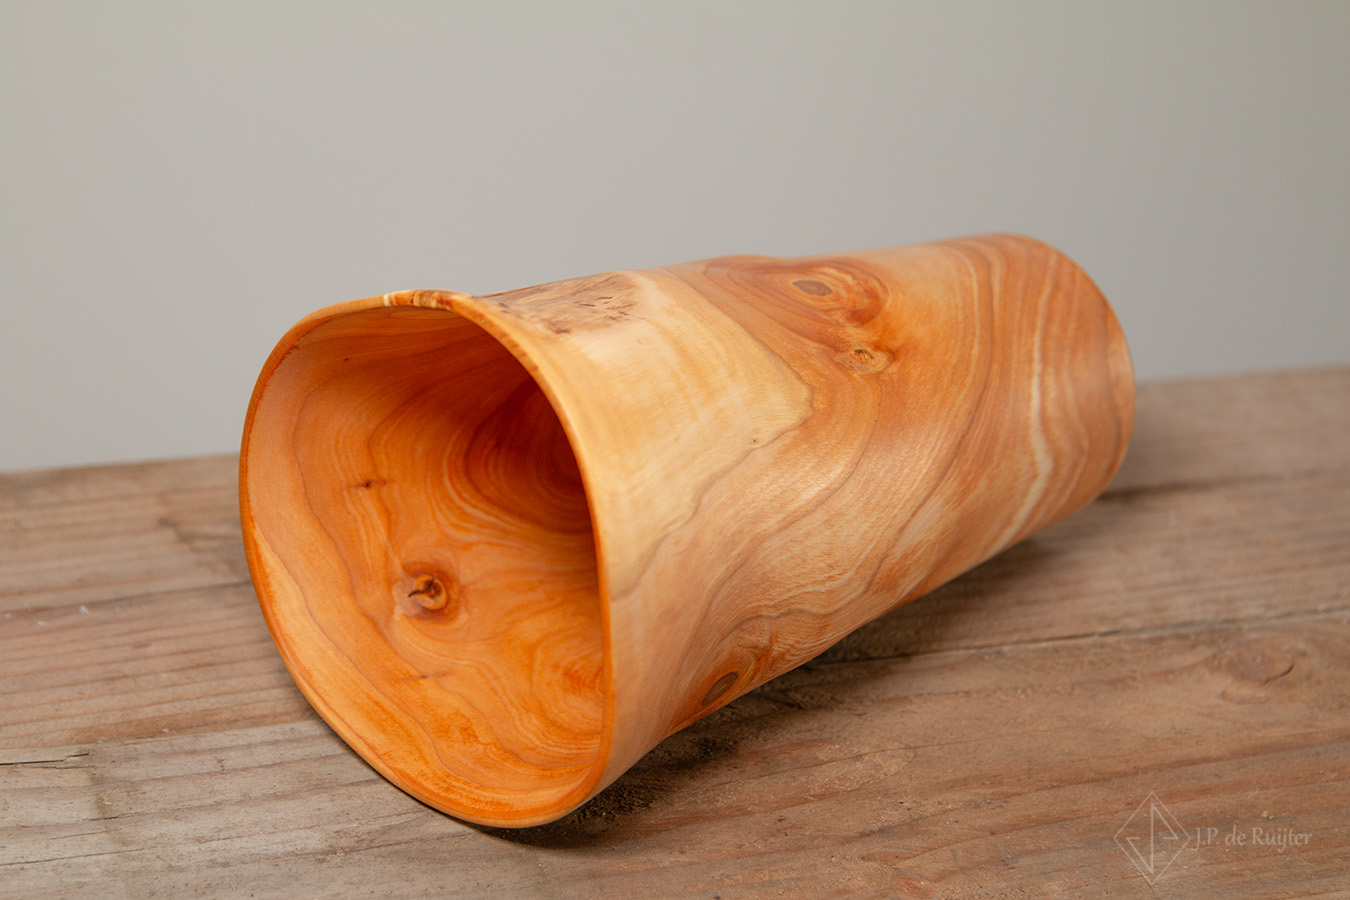 Liggende vaas. Hier zijn de mooie vervormingen van deze houten vaas uit kersen hout goed te zien. Hij is dun en een mooi stuk voor in elk interieur. 